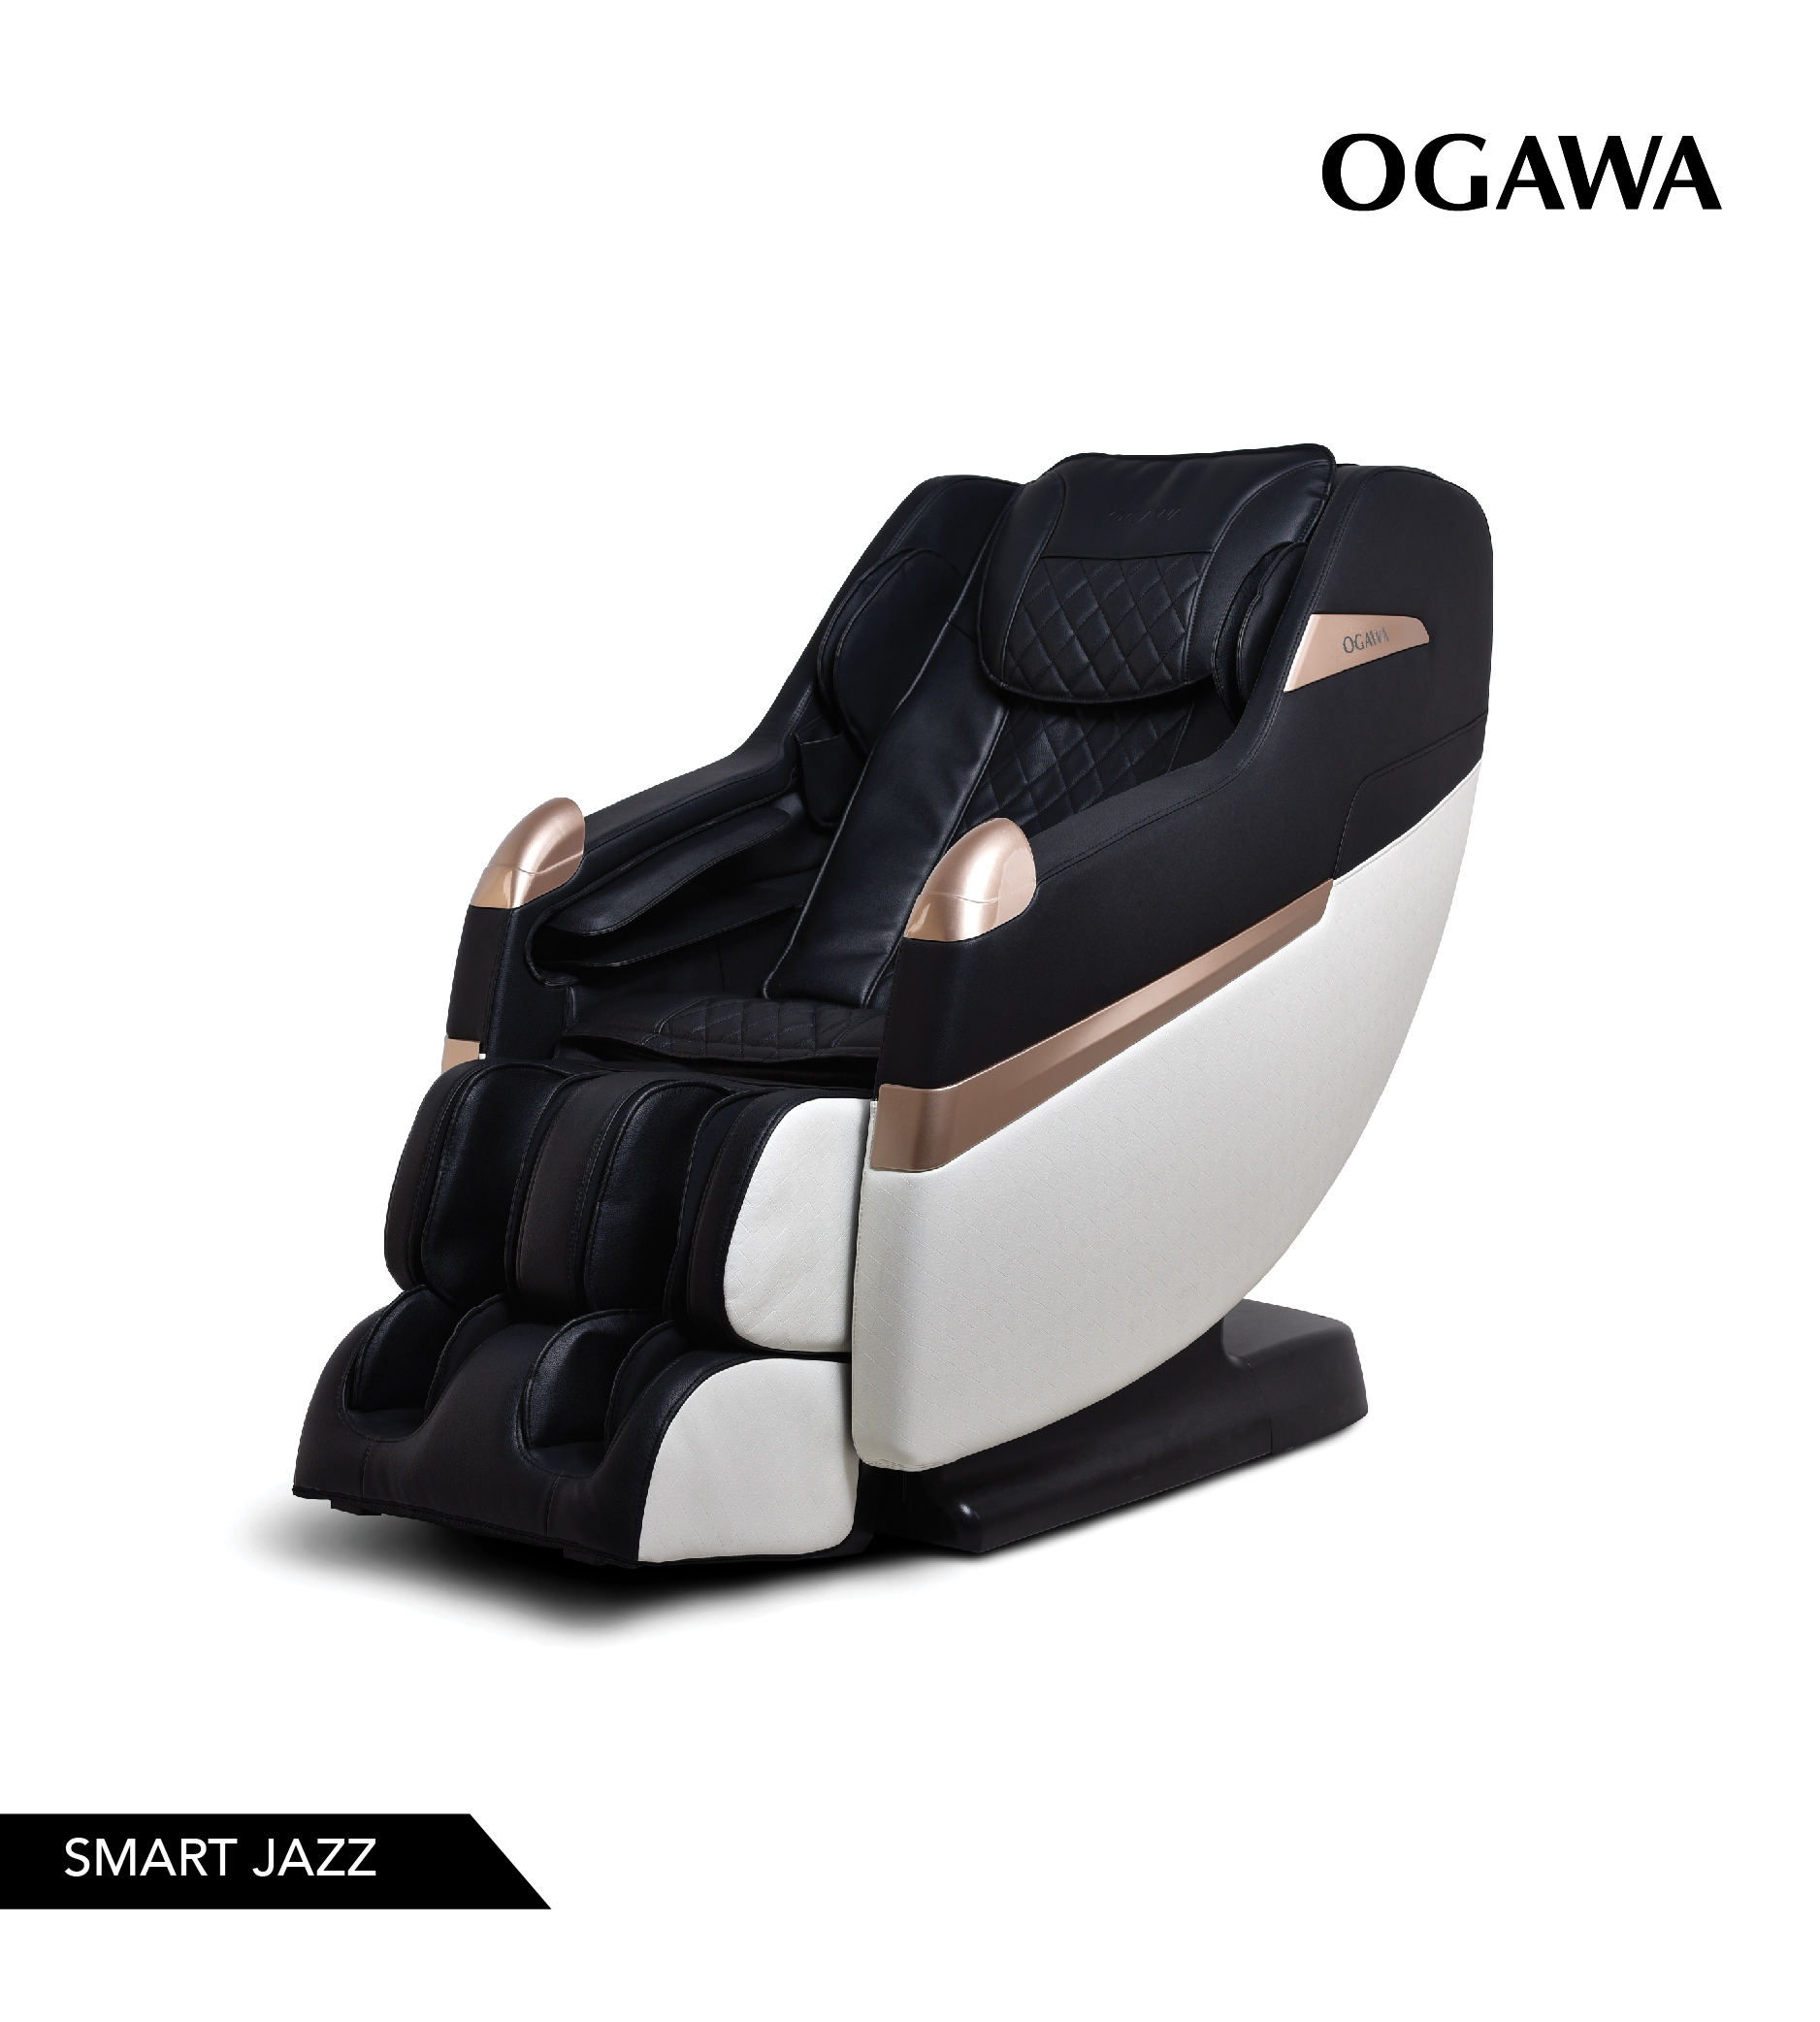 OGAWA Smart Jazz Massage Chair